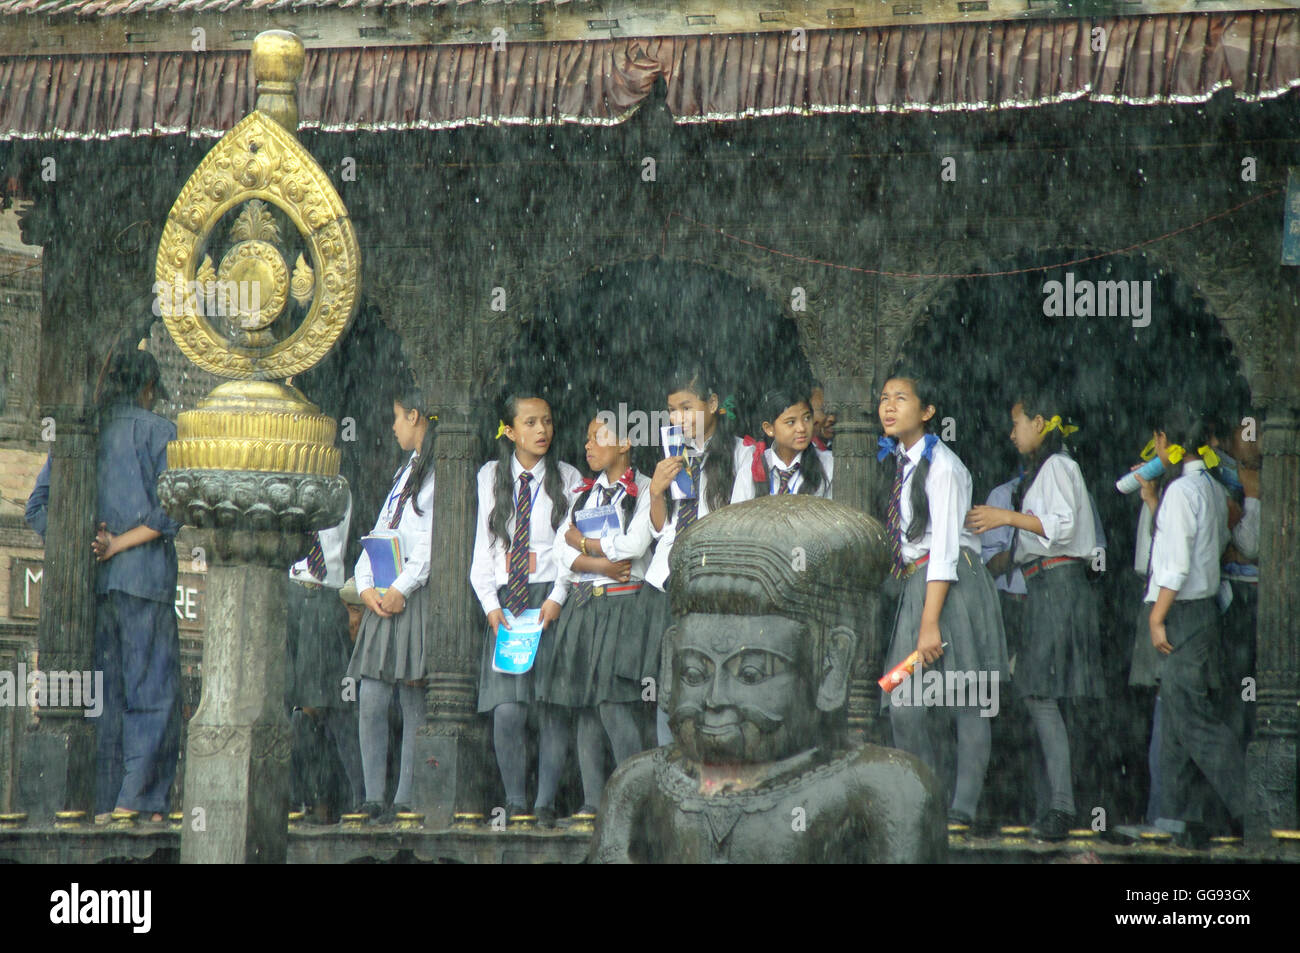 KATHMANDU, ca. AUGUST 2012 - junge Studenten Unterschlupf vor dem Monsunregen in einem Tempel, ca. August 2012 in Kathmandu. Stockfoto